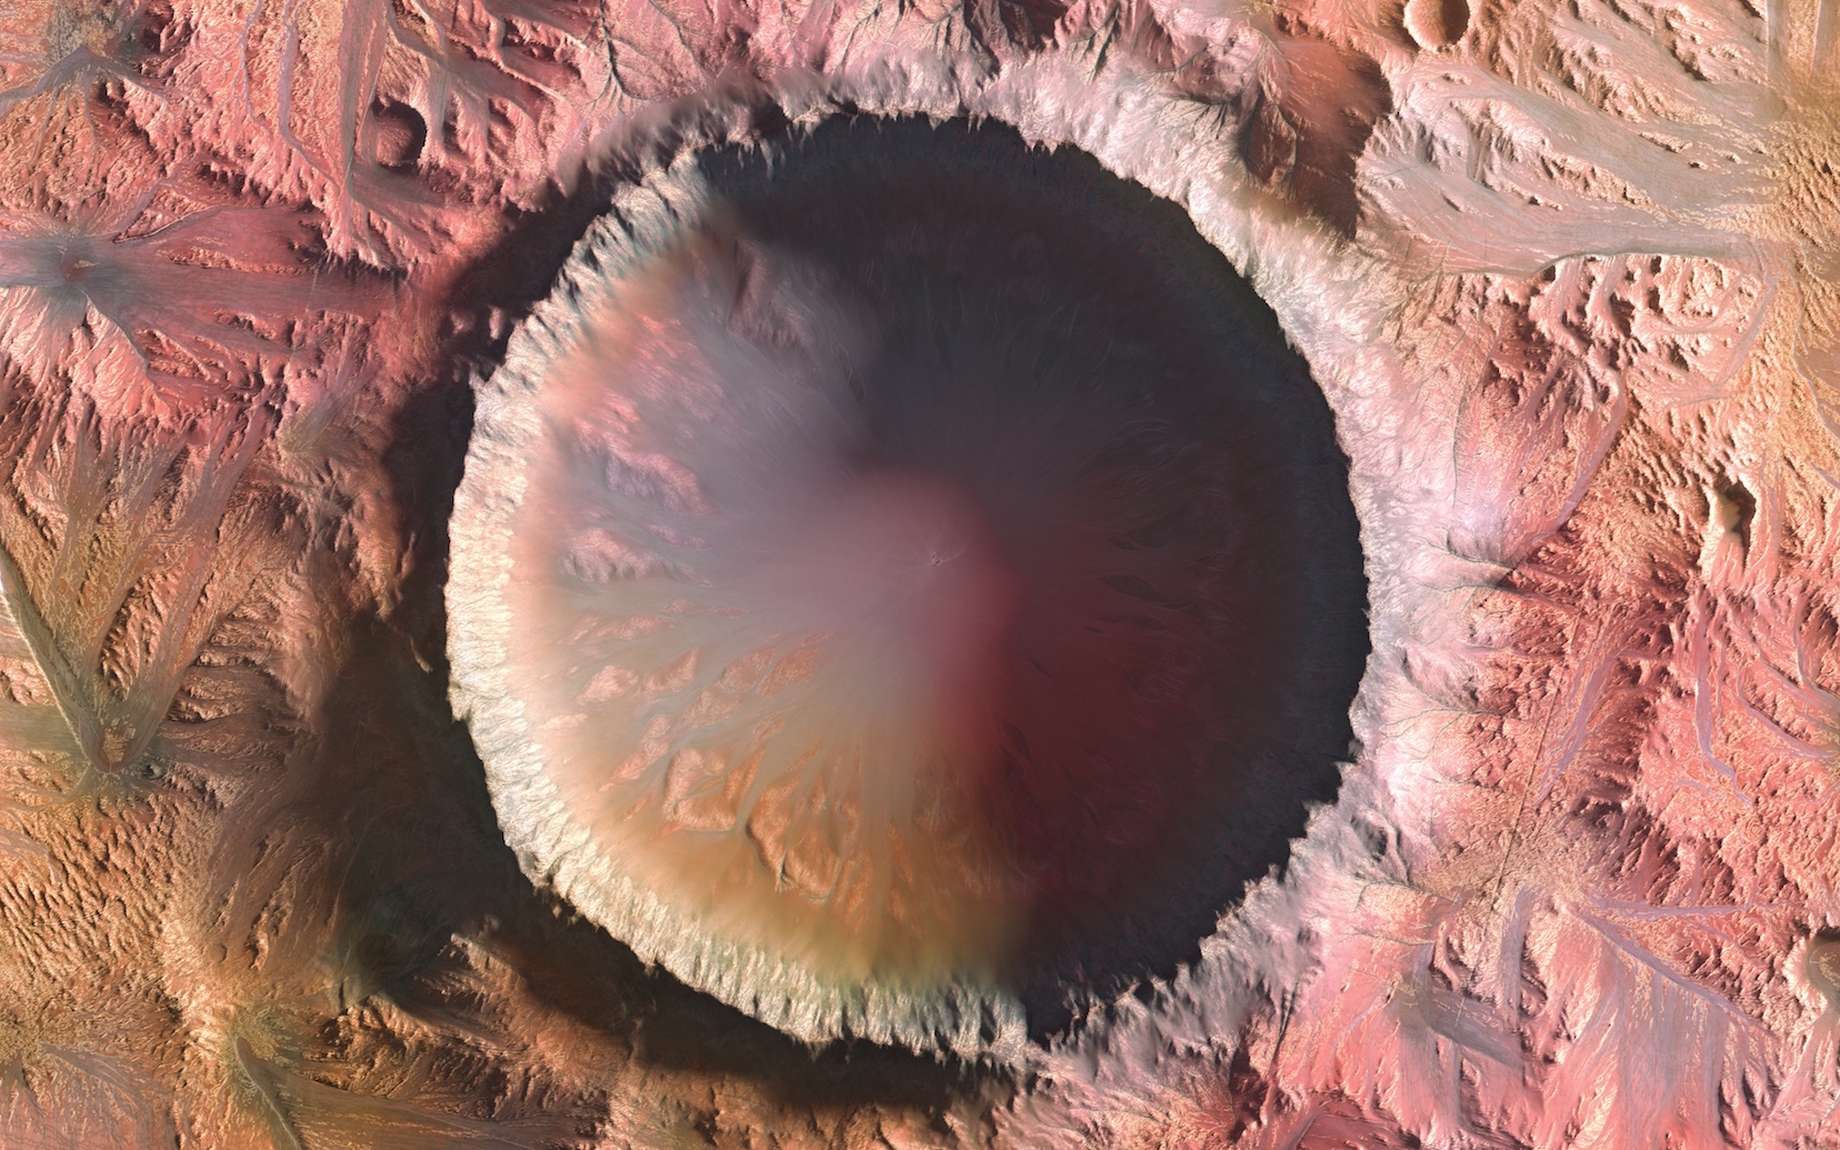 Cet impact sur Mars aurait produit plus de 2 milliards de petits cratères secondaires !